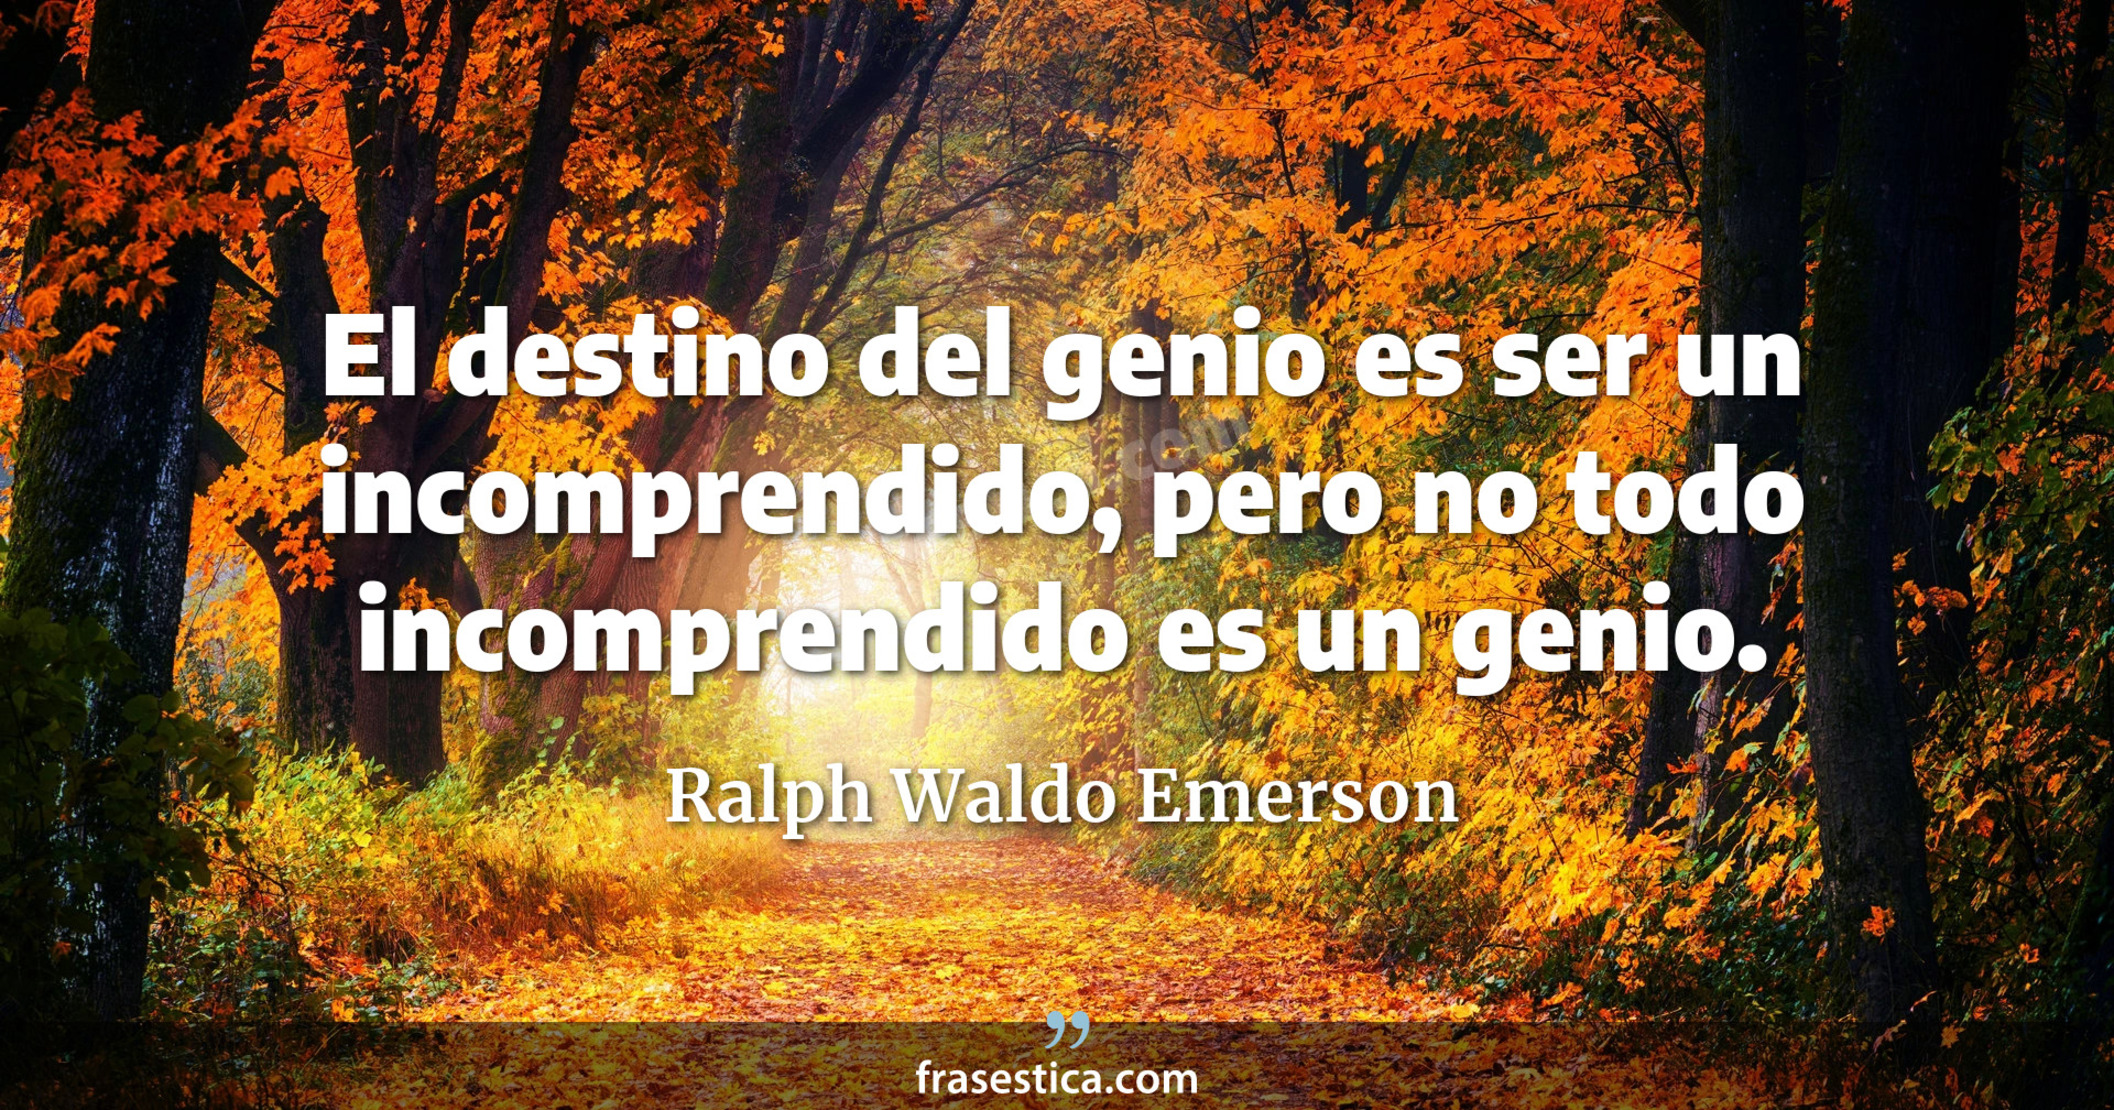 El destino del genio es ser un incomprendido, pero no todo incomprendido es un genio. - Ralph Waldo Emerson